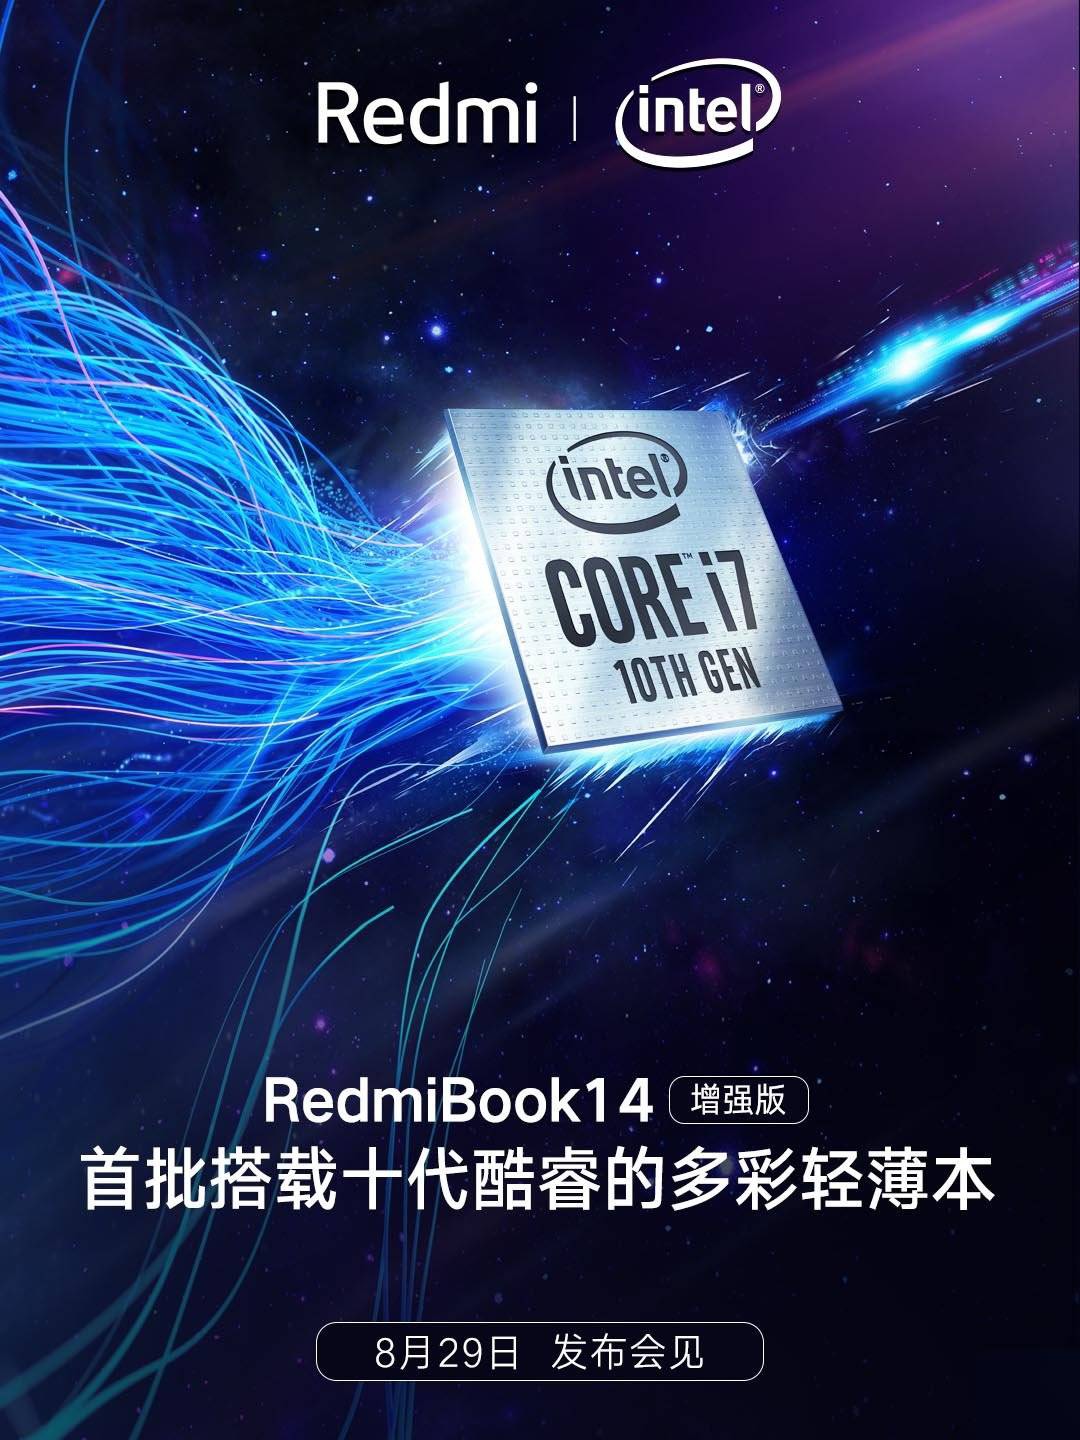 RedmiBook 14 baru dengan prosesor Intel Core i7 10th Gen akan disajikan pada 29 Agustus ini 1